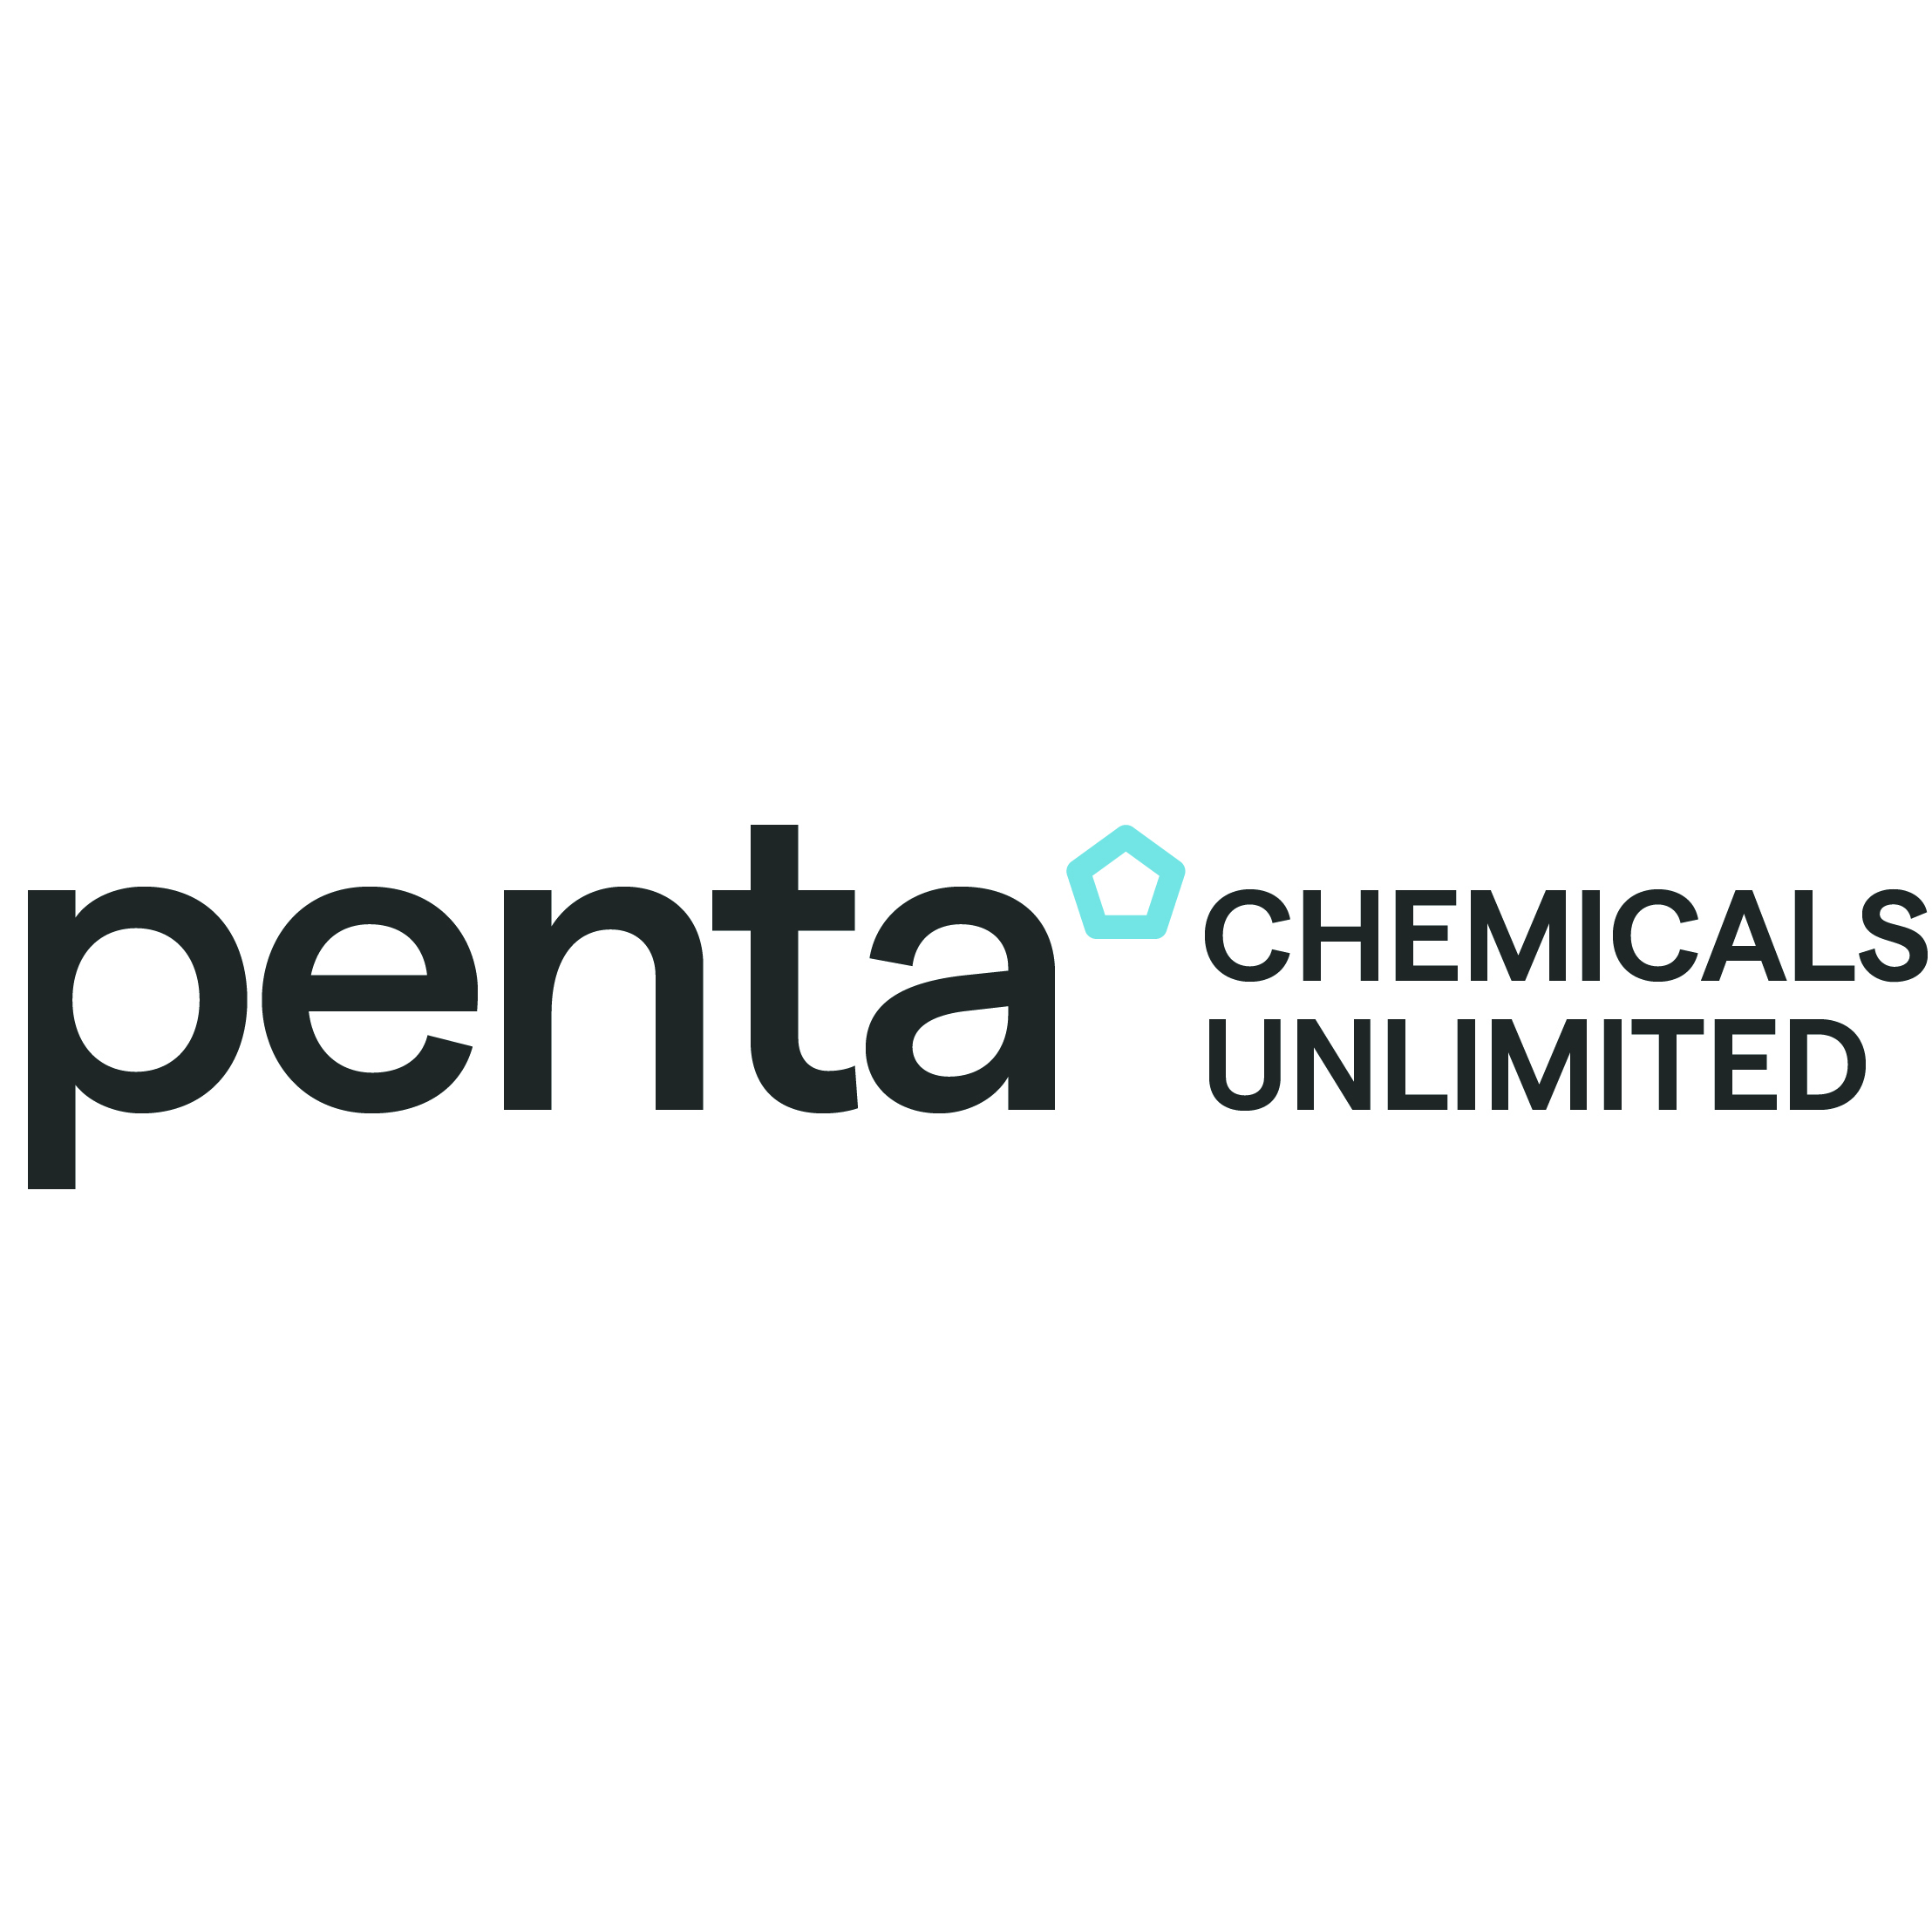 Penta Chemicals